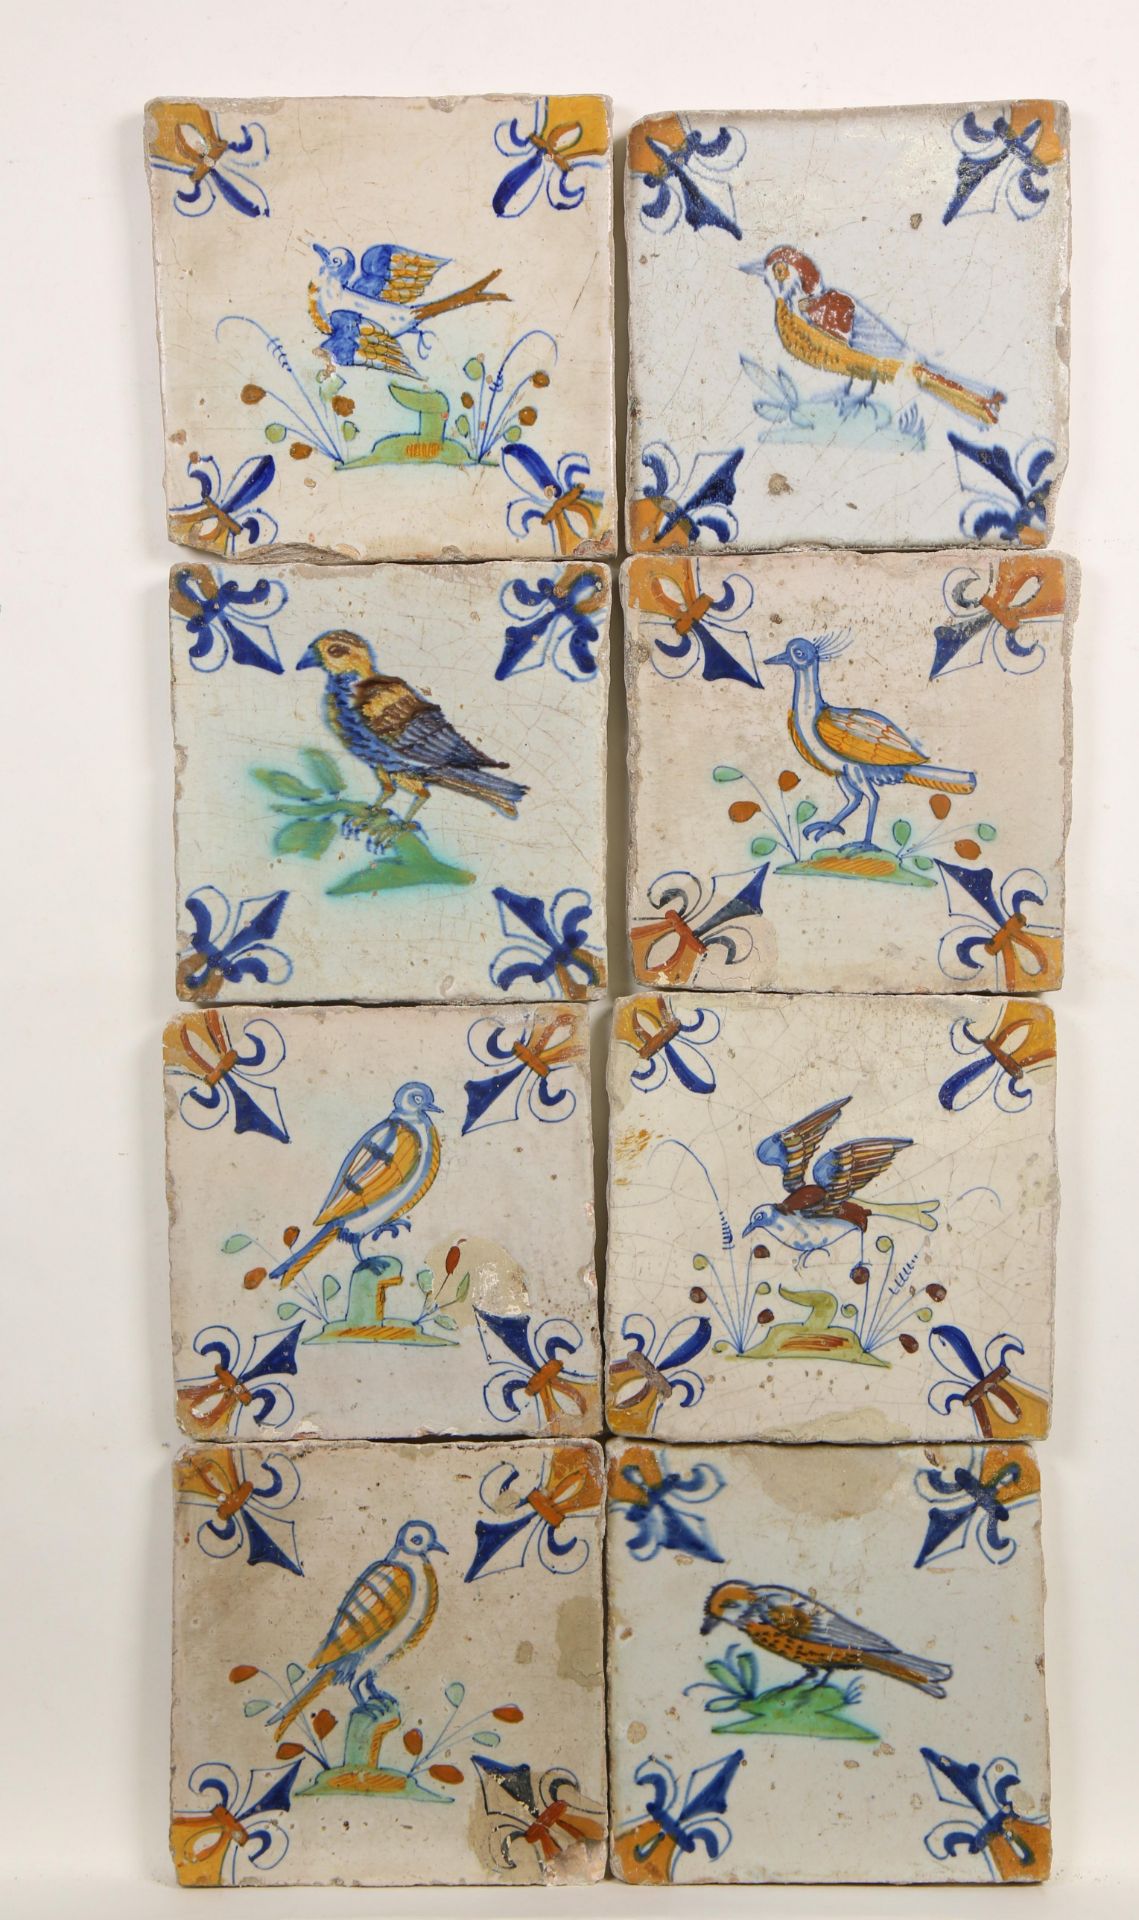 Acht polychroom aardewerk dierendecor tegels, ca. 1620-1650,